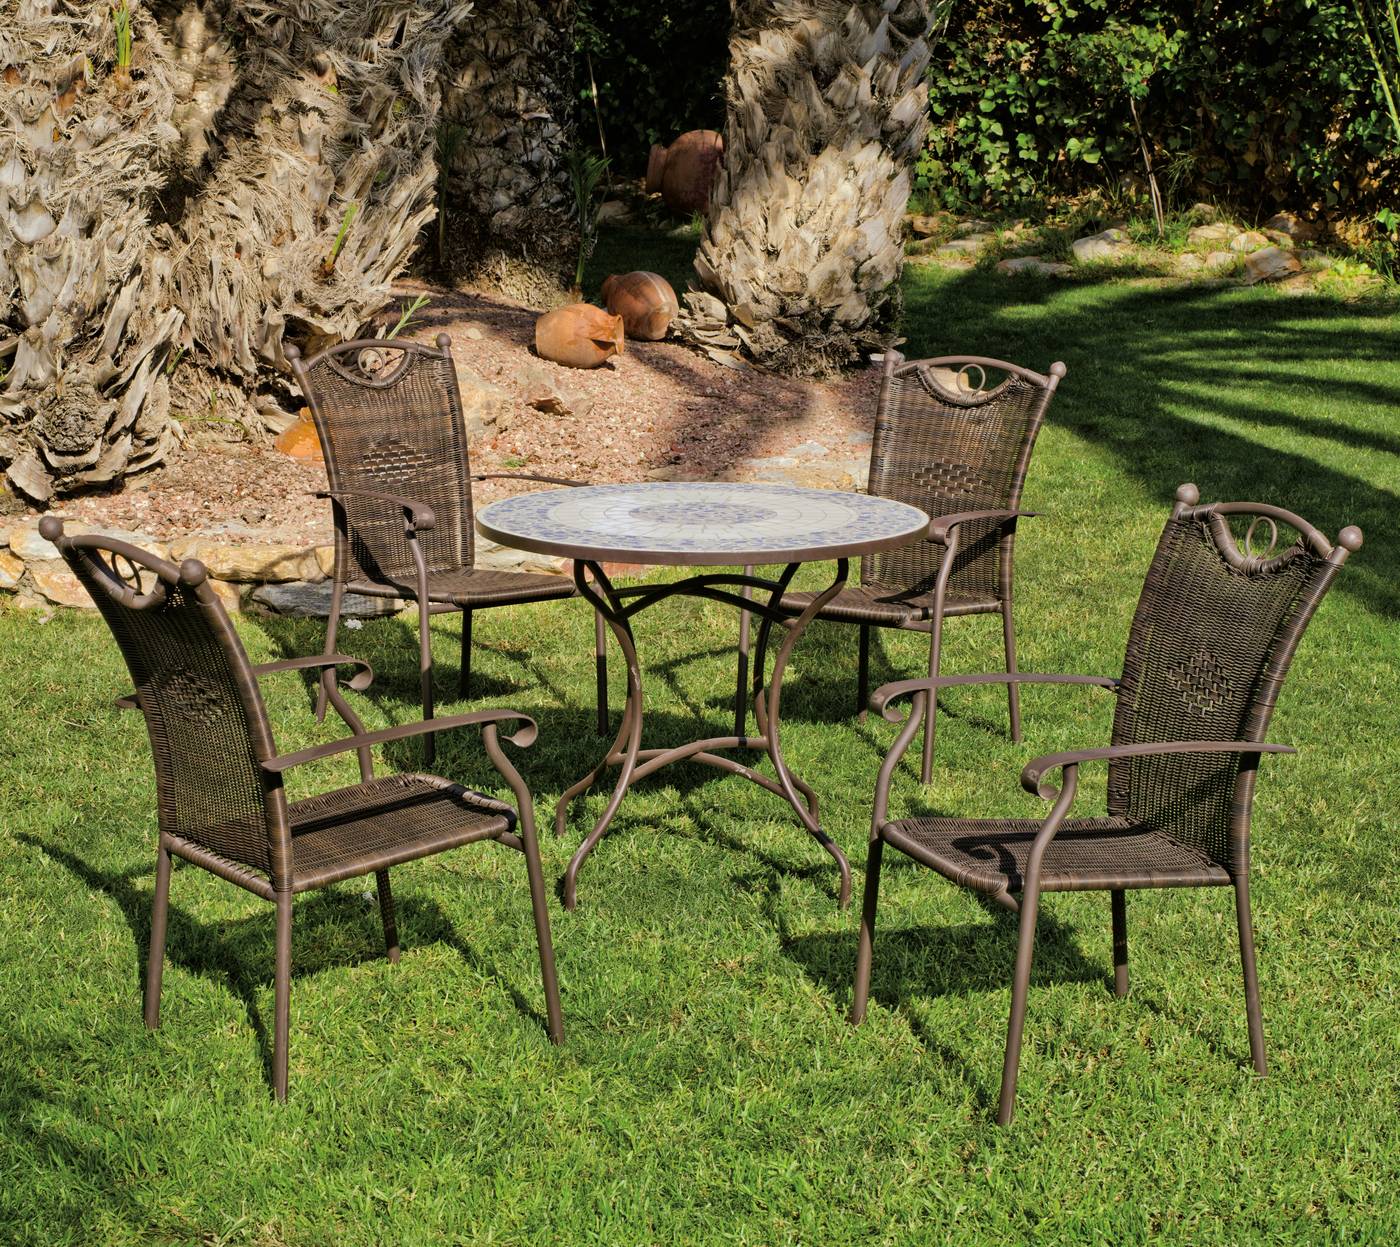 Conjunto de forja para jardín: mesa redonda 90 cm. de forja con tablero mosaico + 4 sillones de forja y huitex